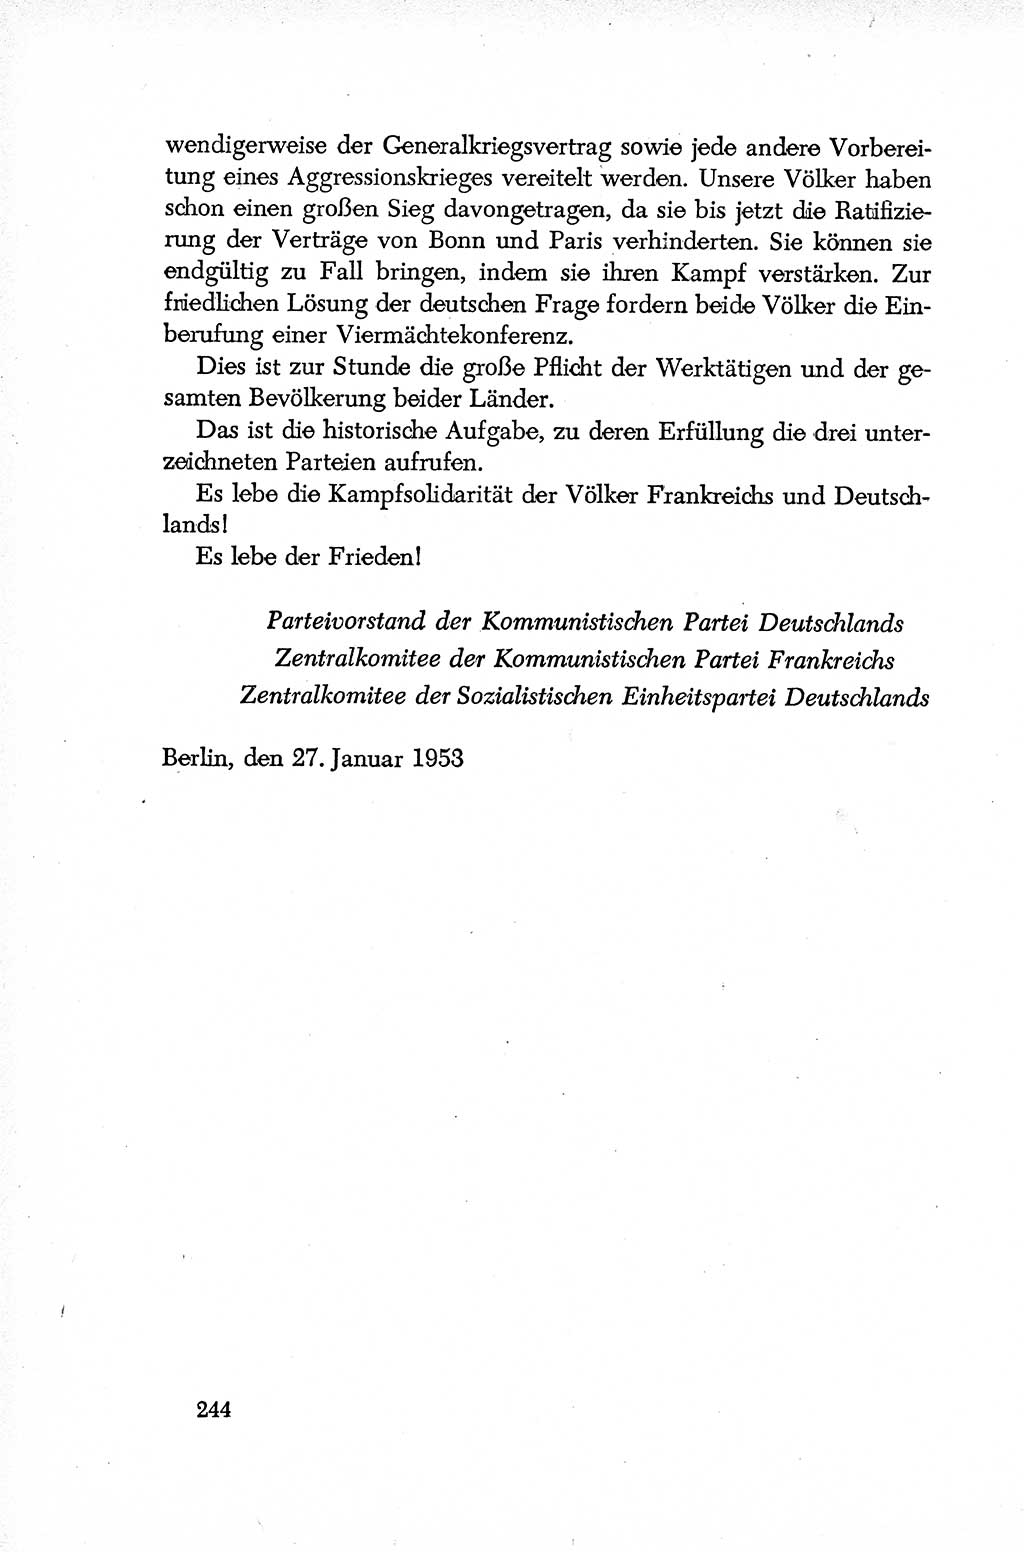 Dokumente der Sozialistischen Einheitspartei Deutschlands (SED) [Deutsche Demokratische Republik (DDR)] 1952-1953, Seite 244 (Dok. SED DDR 1952-1953, S. 244)